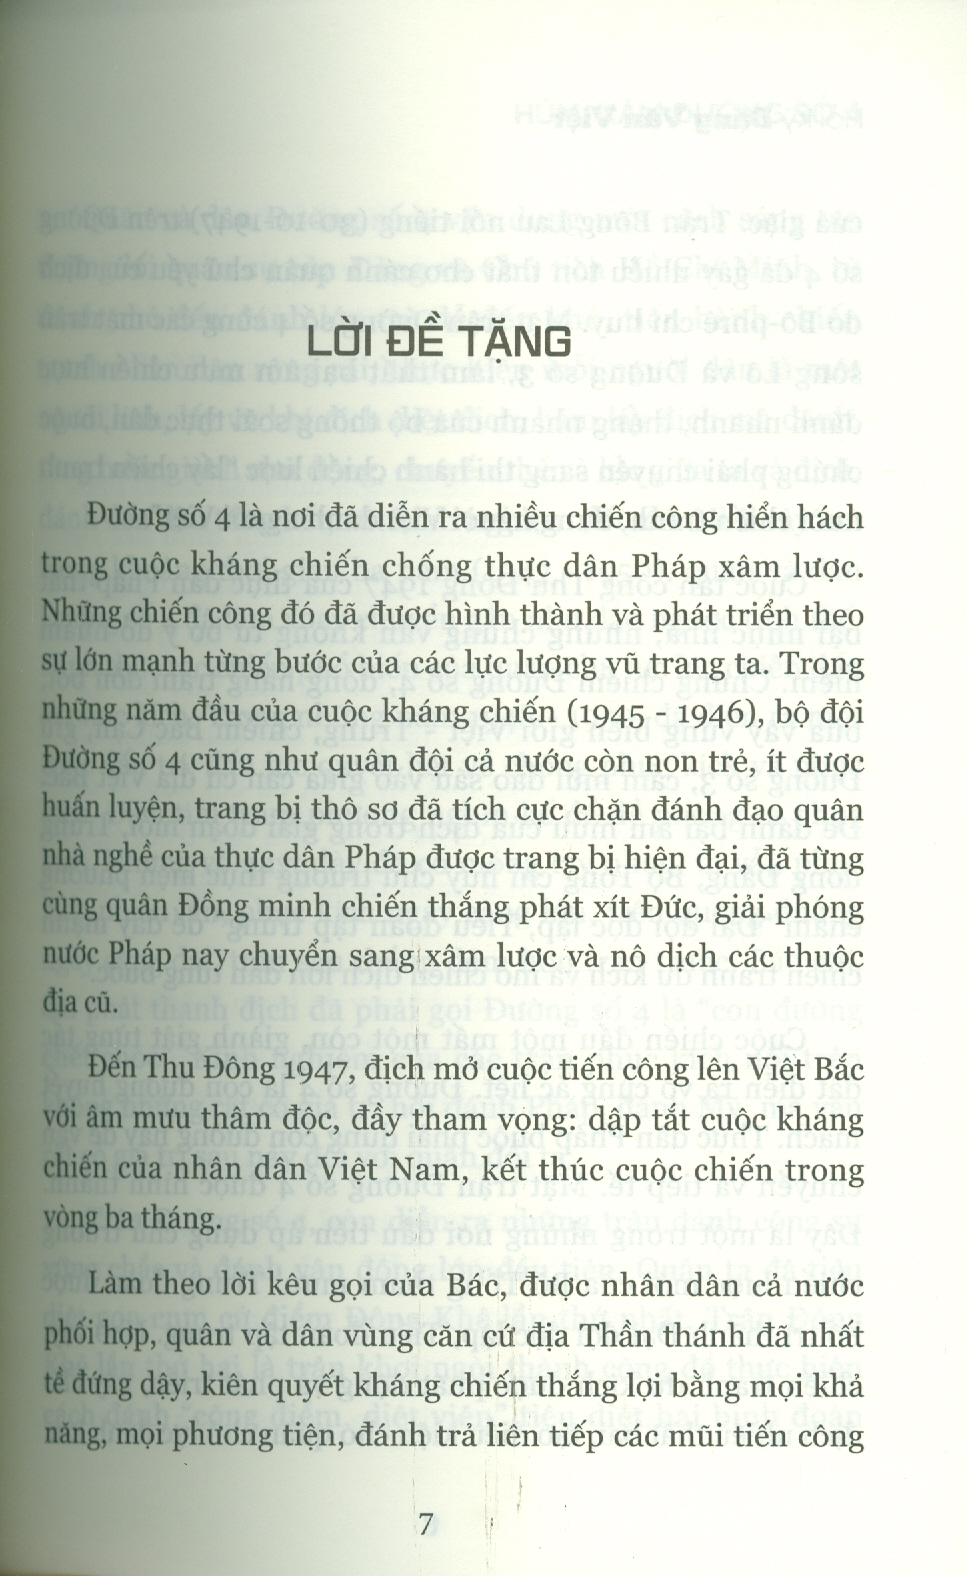 Cuốn Hồi Kí Chiến Tranh Hay Nhất Thế Giới Theo Bbc Năm 2004 - HÙM XÁM ĐƯỜNG SỐ 4 - HỒI KÍ ĐẶNG VĂN VIỆT - Hanoi Books